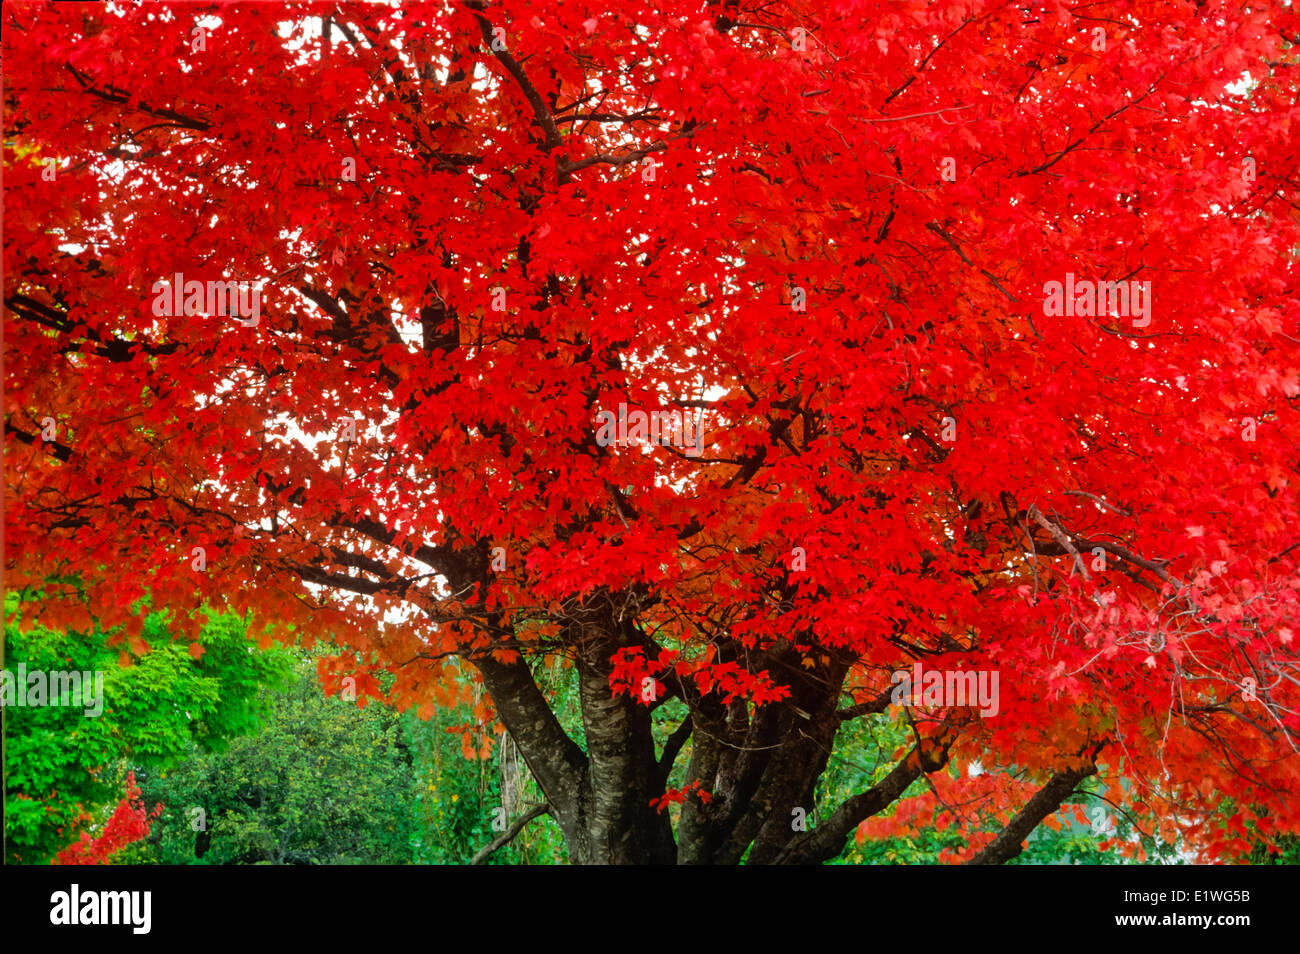 cin fall foliage, Windsor, Nova Scotia, Canada Stock Photo